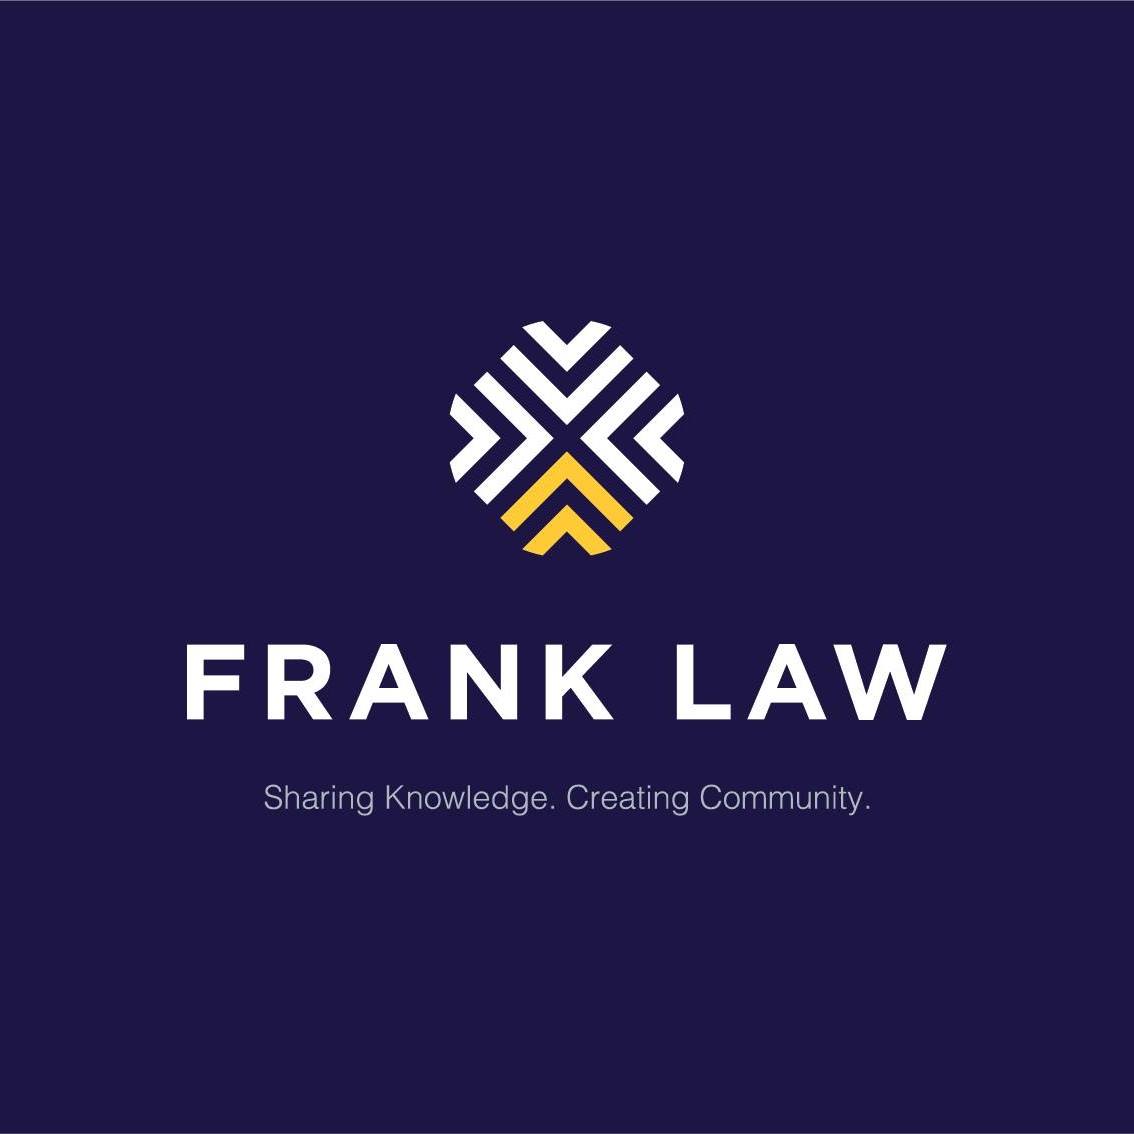 Company logo of Frank Law